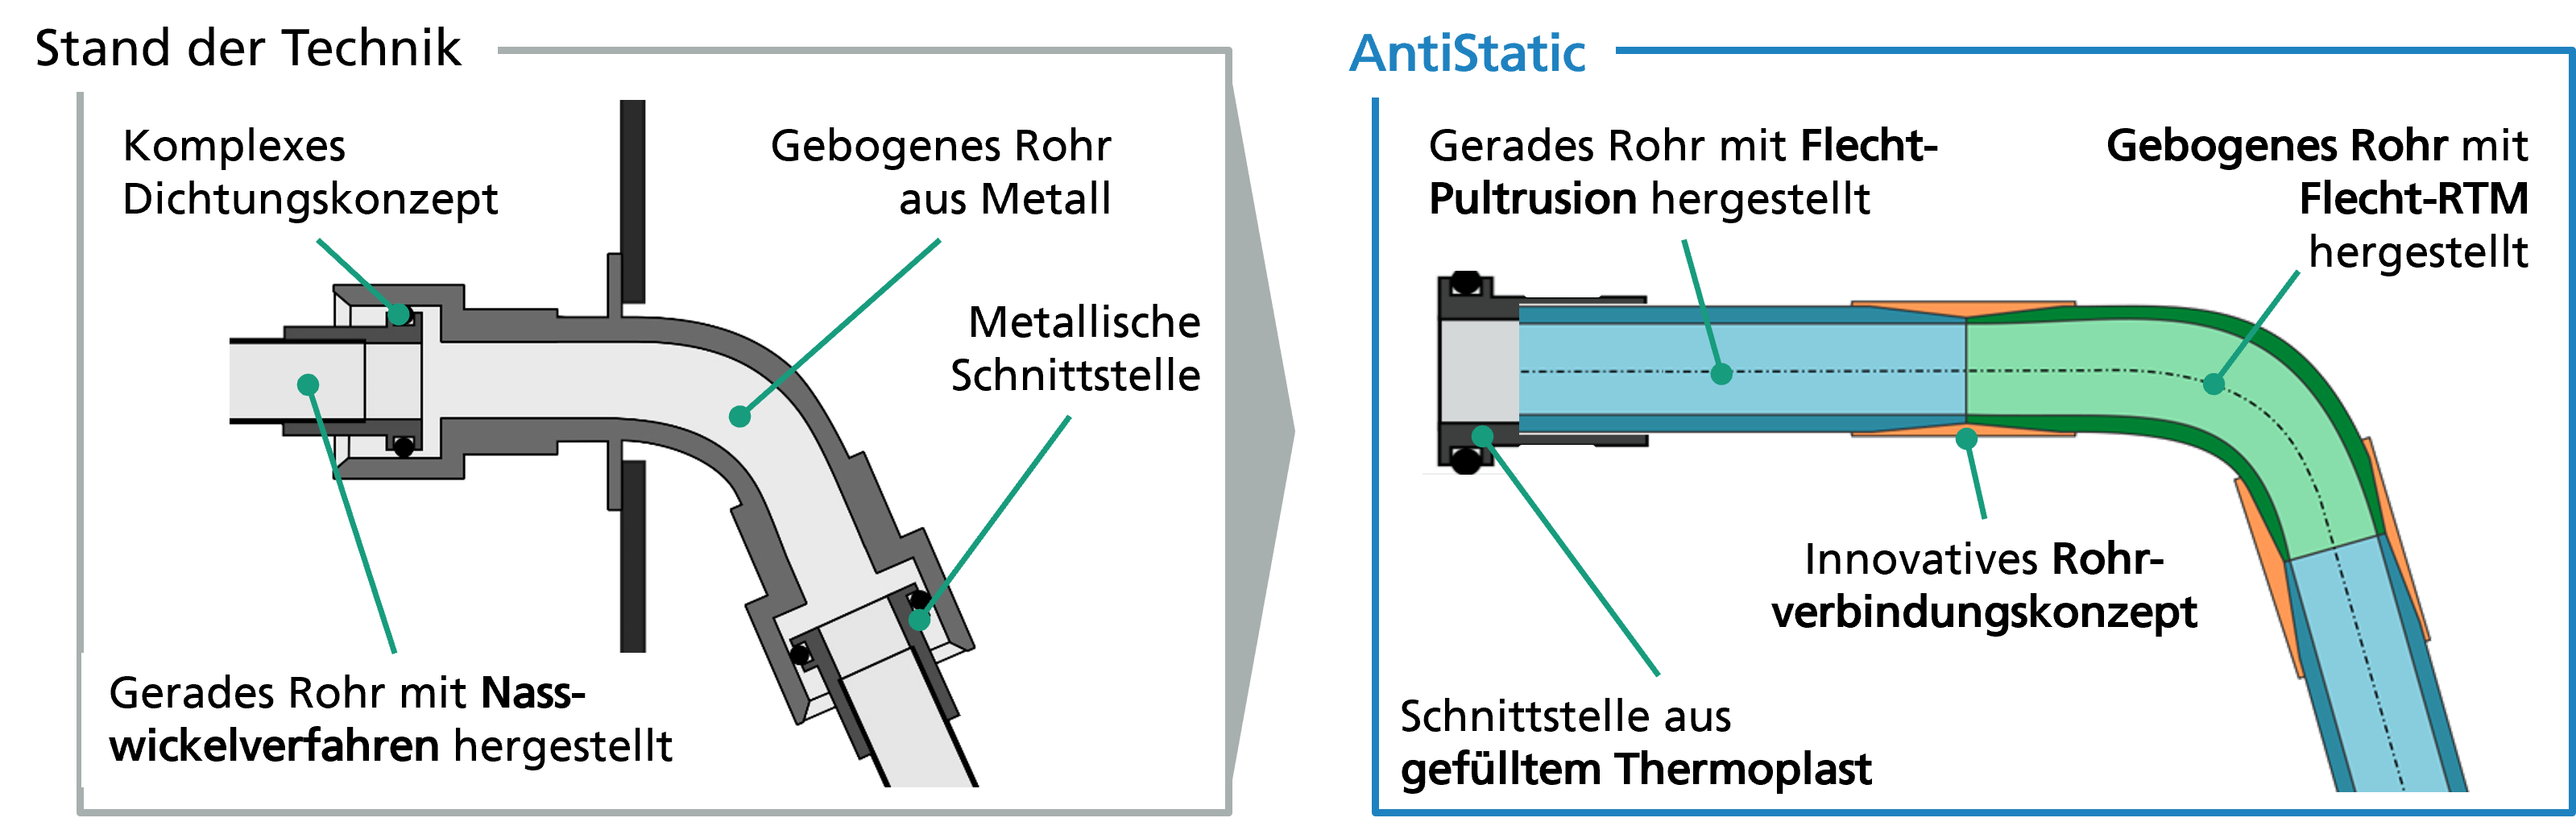 Abbildung 1: Stand der Technik (links) gegenüber der in AntiStatic entwickelten neuartigen Technologie (rechts)